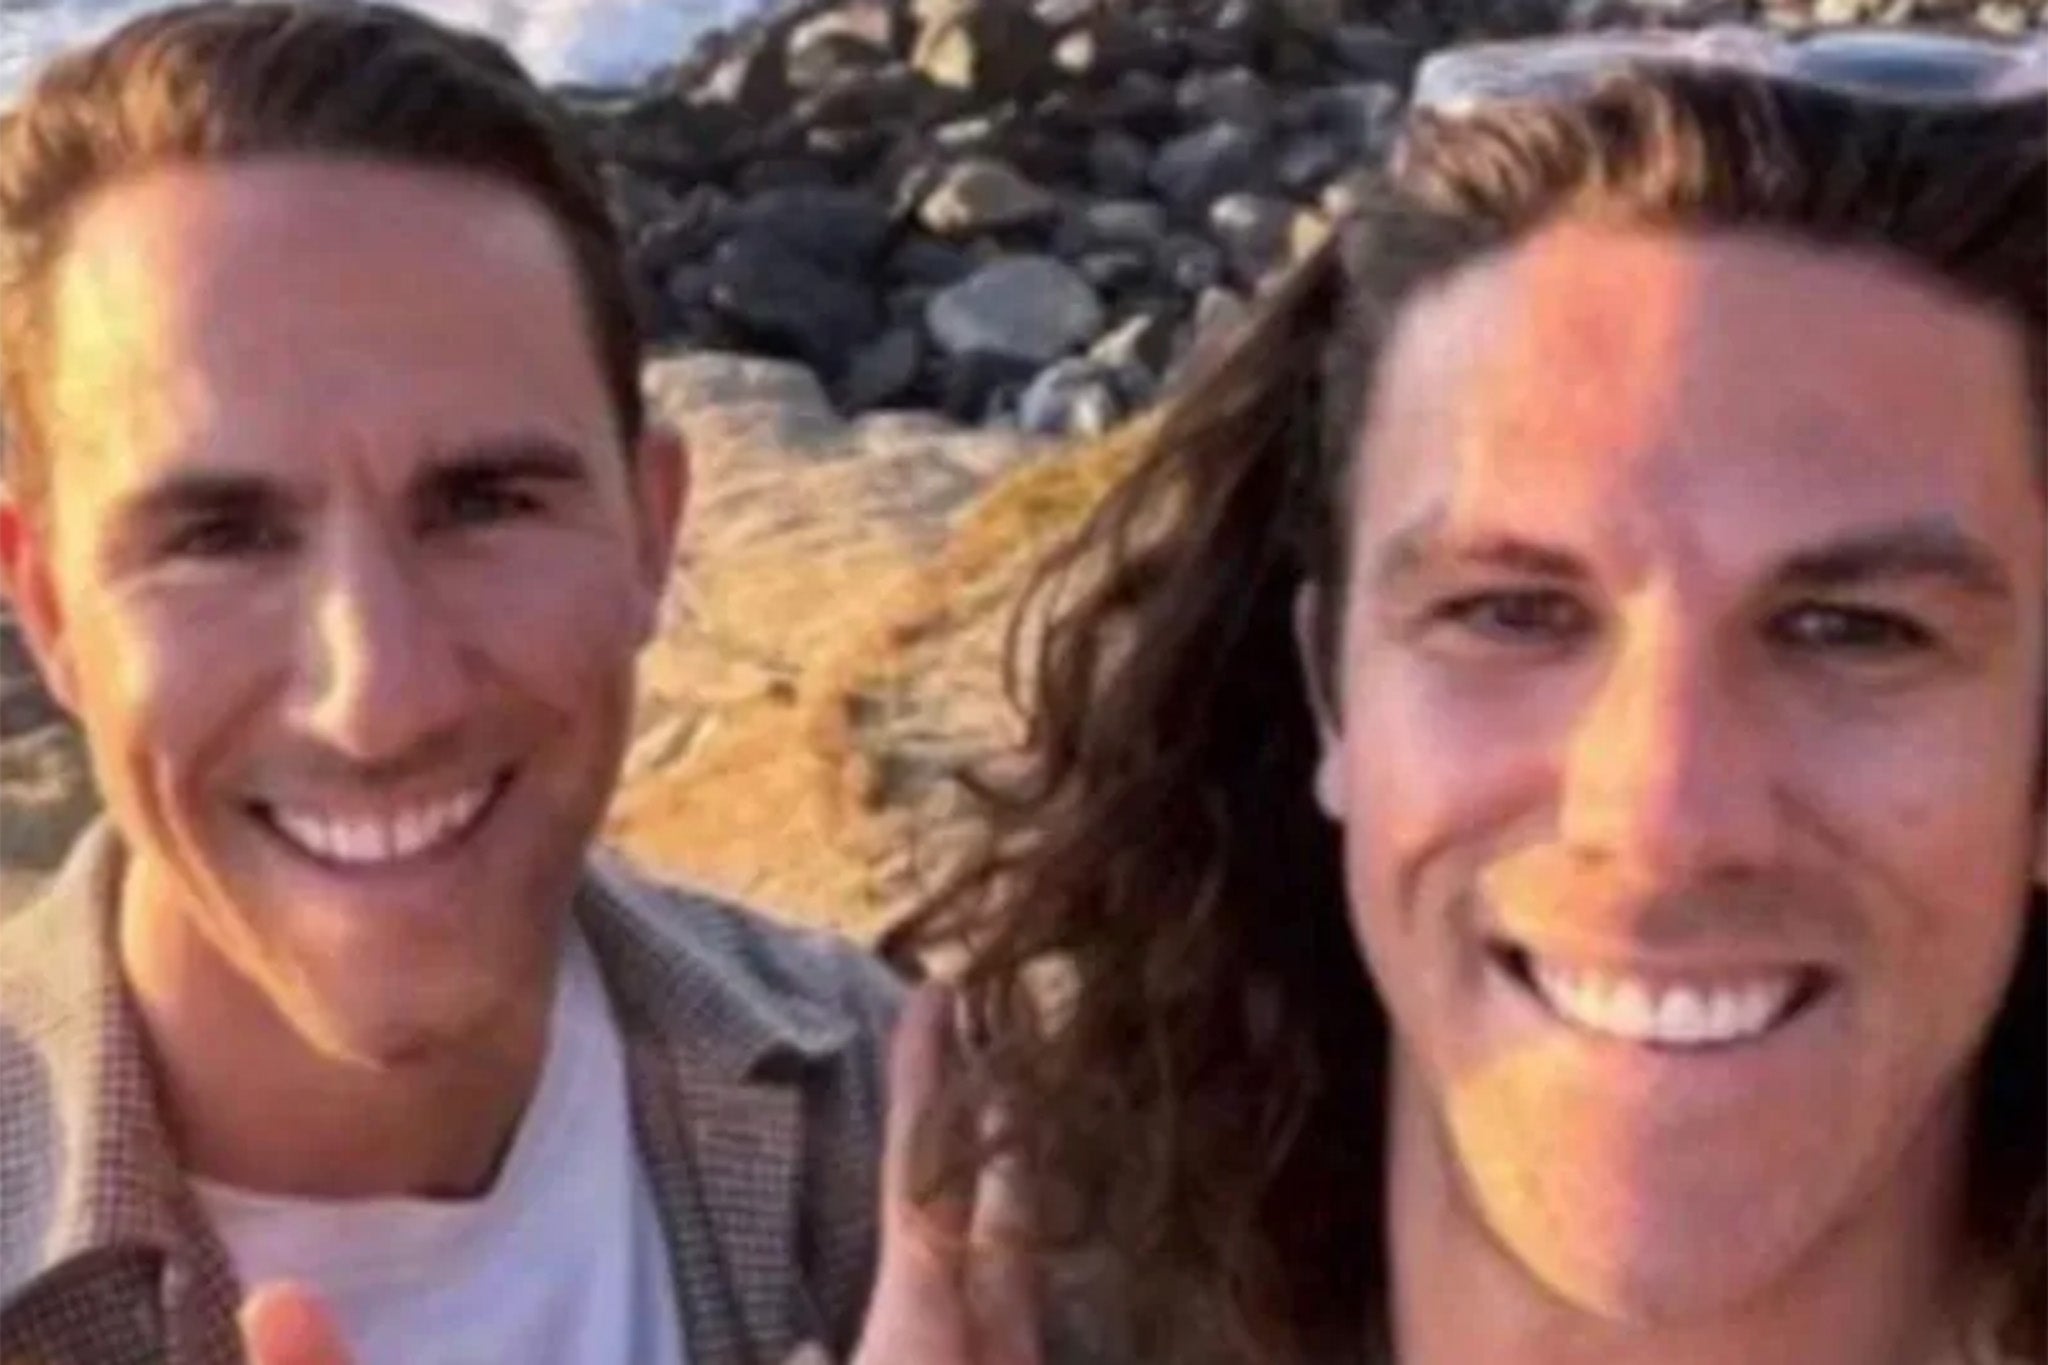 Los hermanos australianos Jake y Callum Robinson, junto con su amigo de San Diego, Jack Carter Rhoad, murieron durante un viaje para practicar surf en México